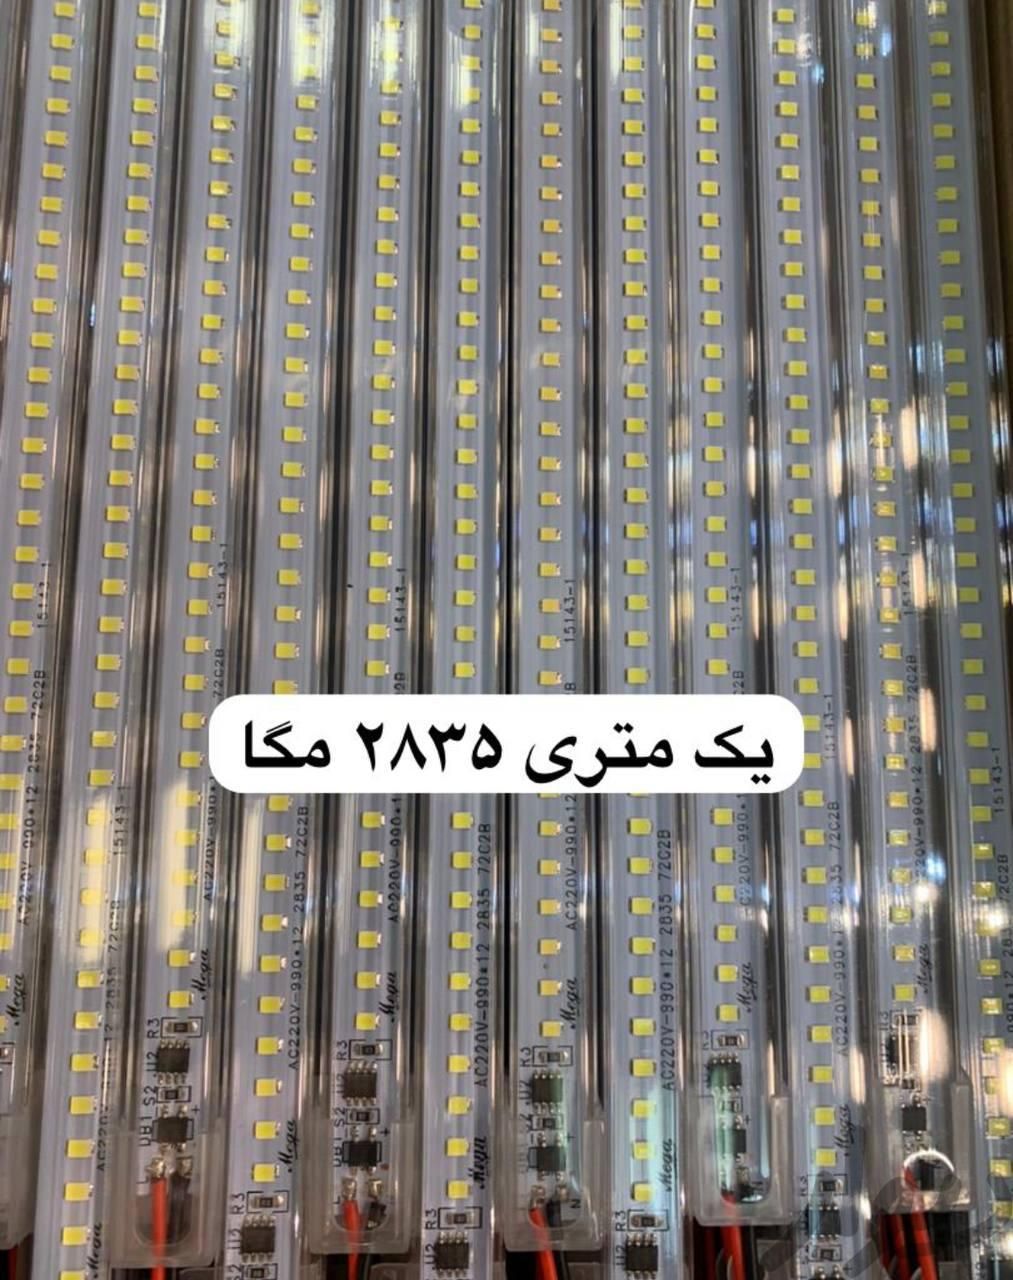 ریسه خطی ۱ متری ۲۲۰ ولت|ریسه و چراغ تزئینی|تهران, تهران‌ویلا|دیوار